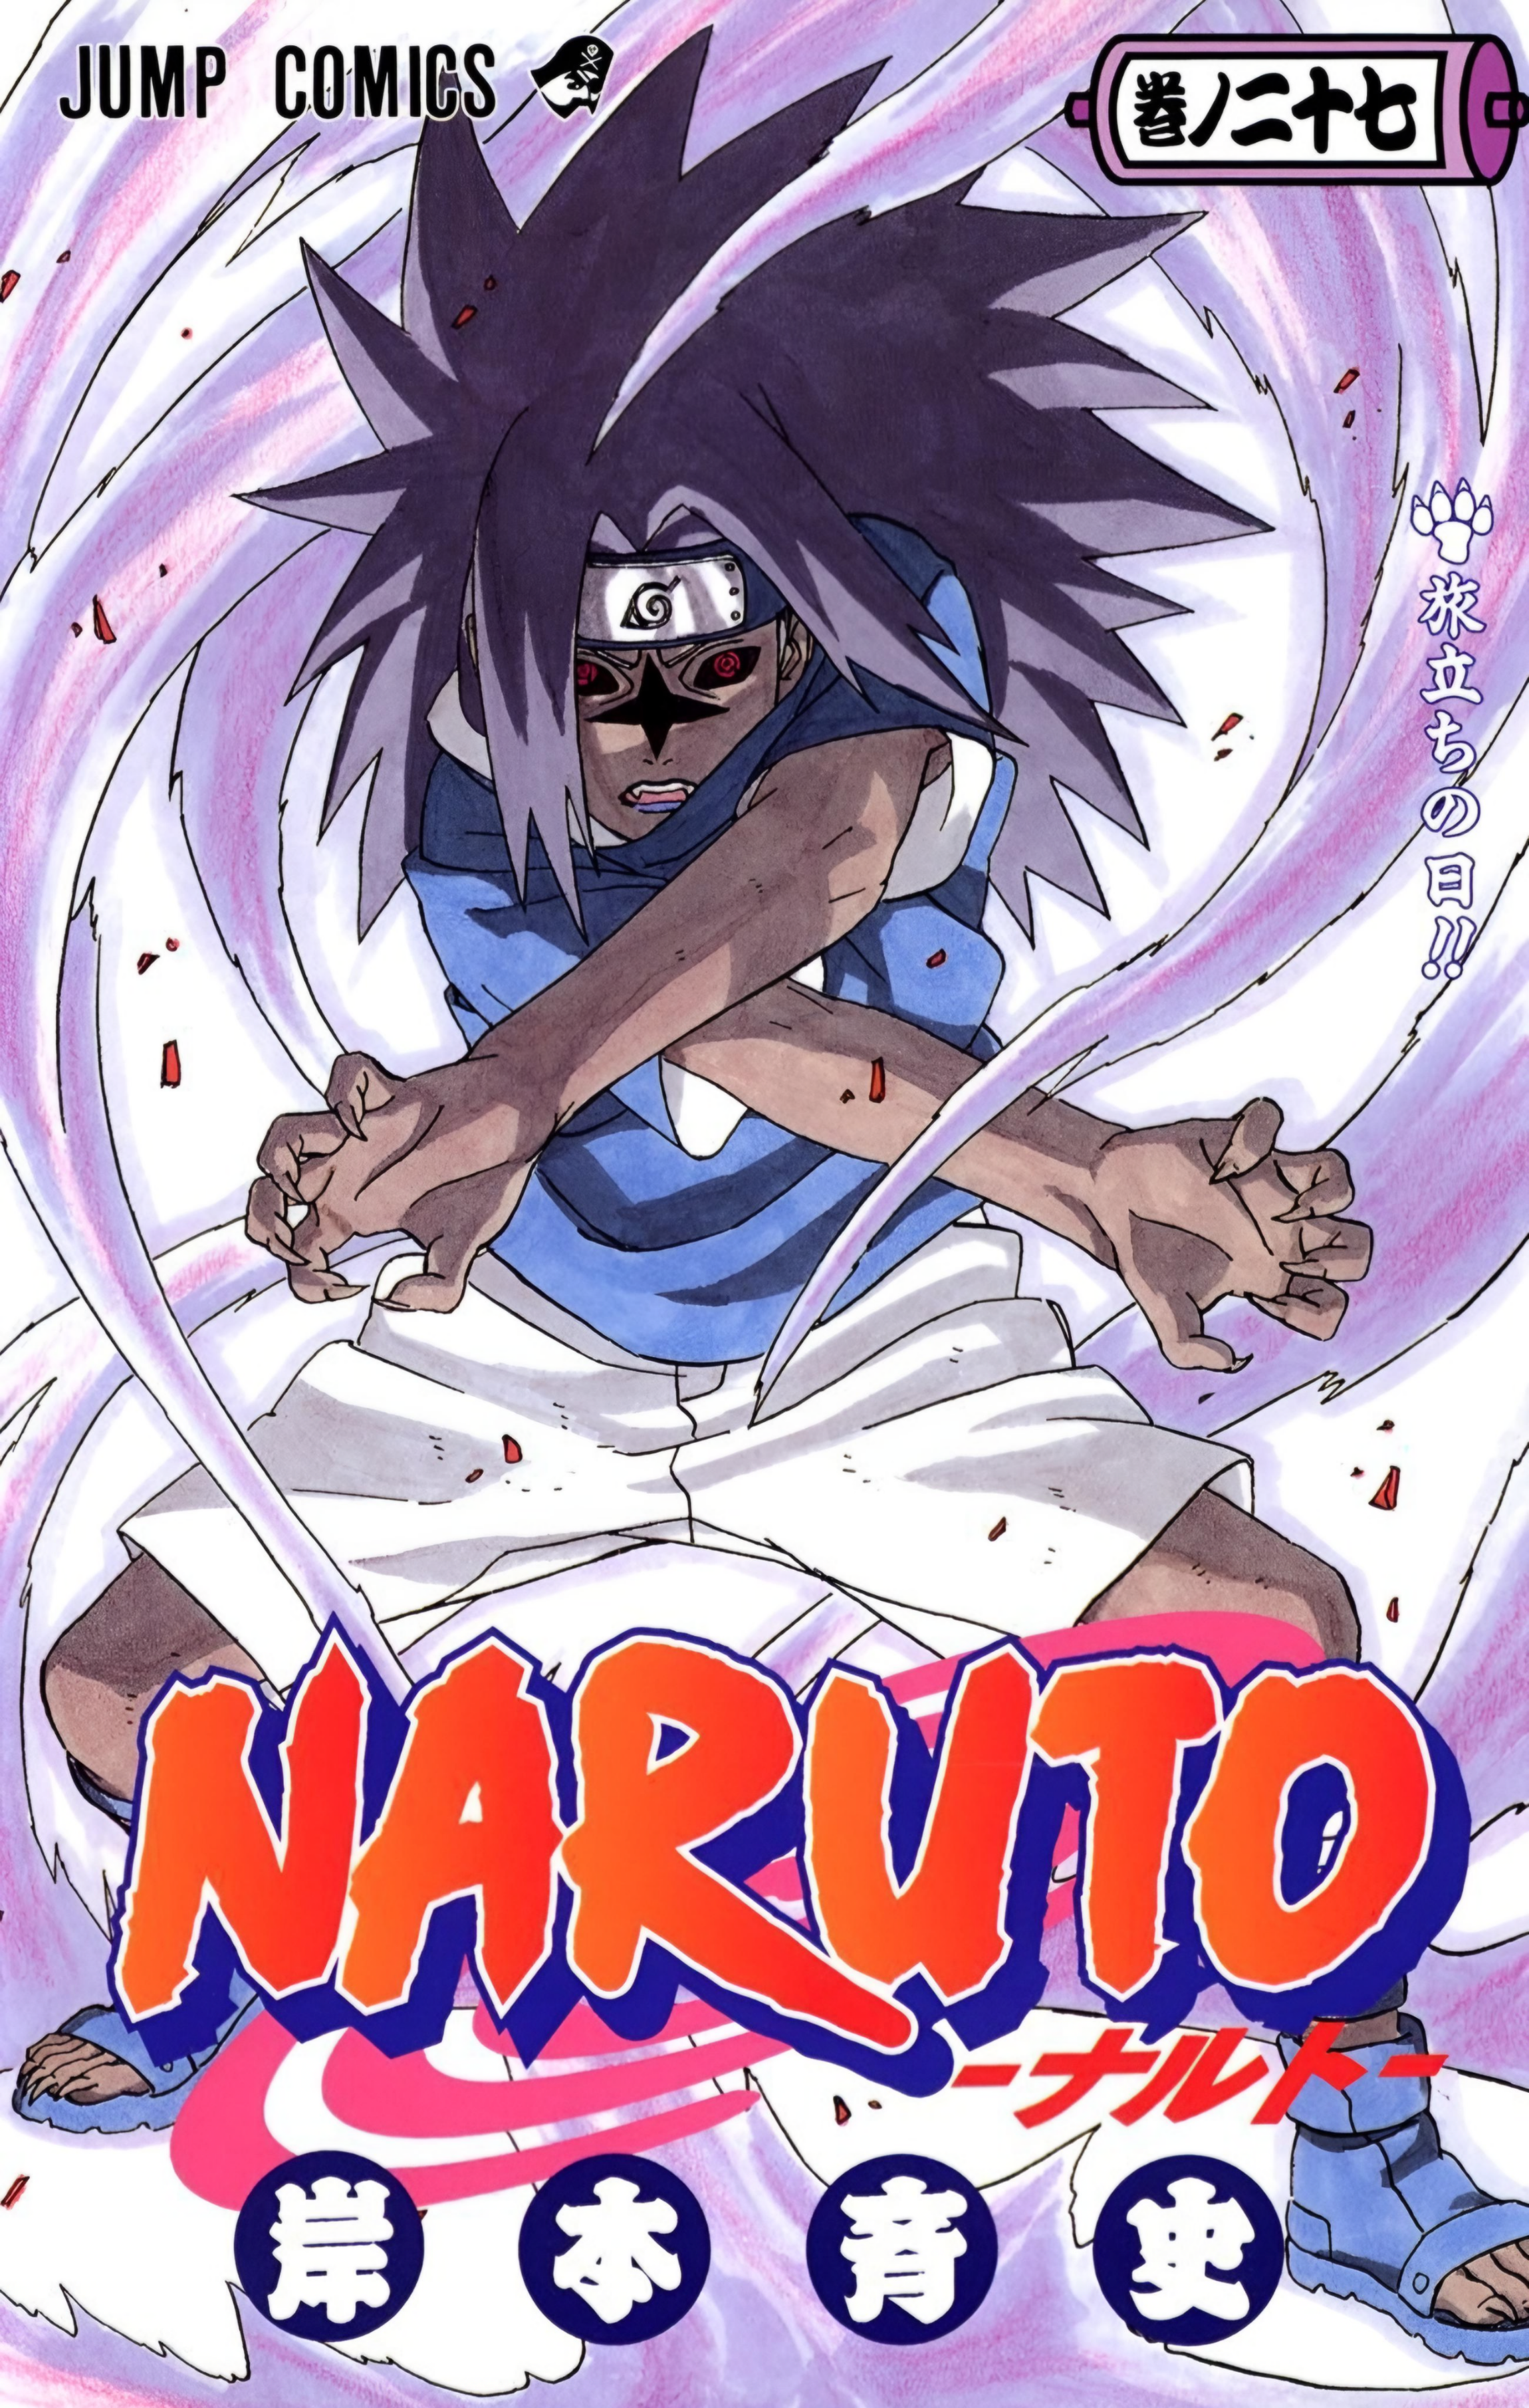 Lista de capítulos de Naruto (parte I) – Wikipédia, a enciclopédia livre